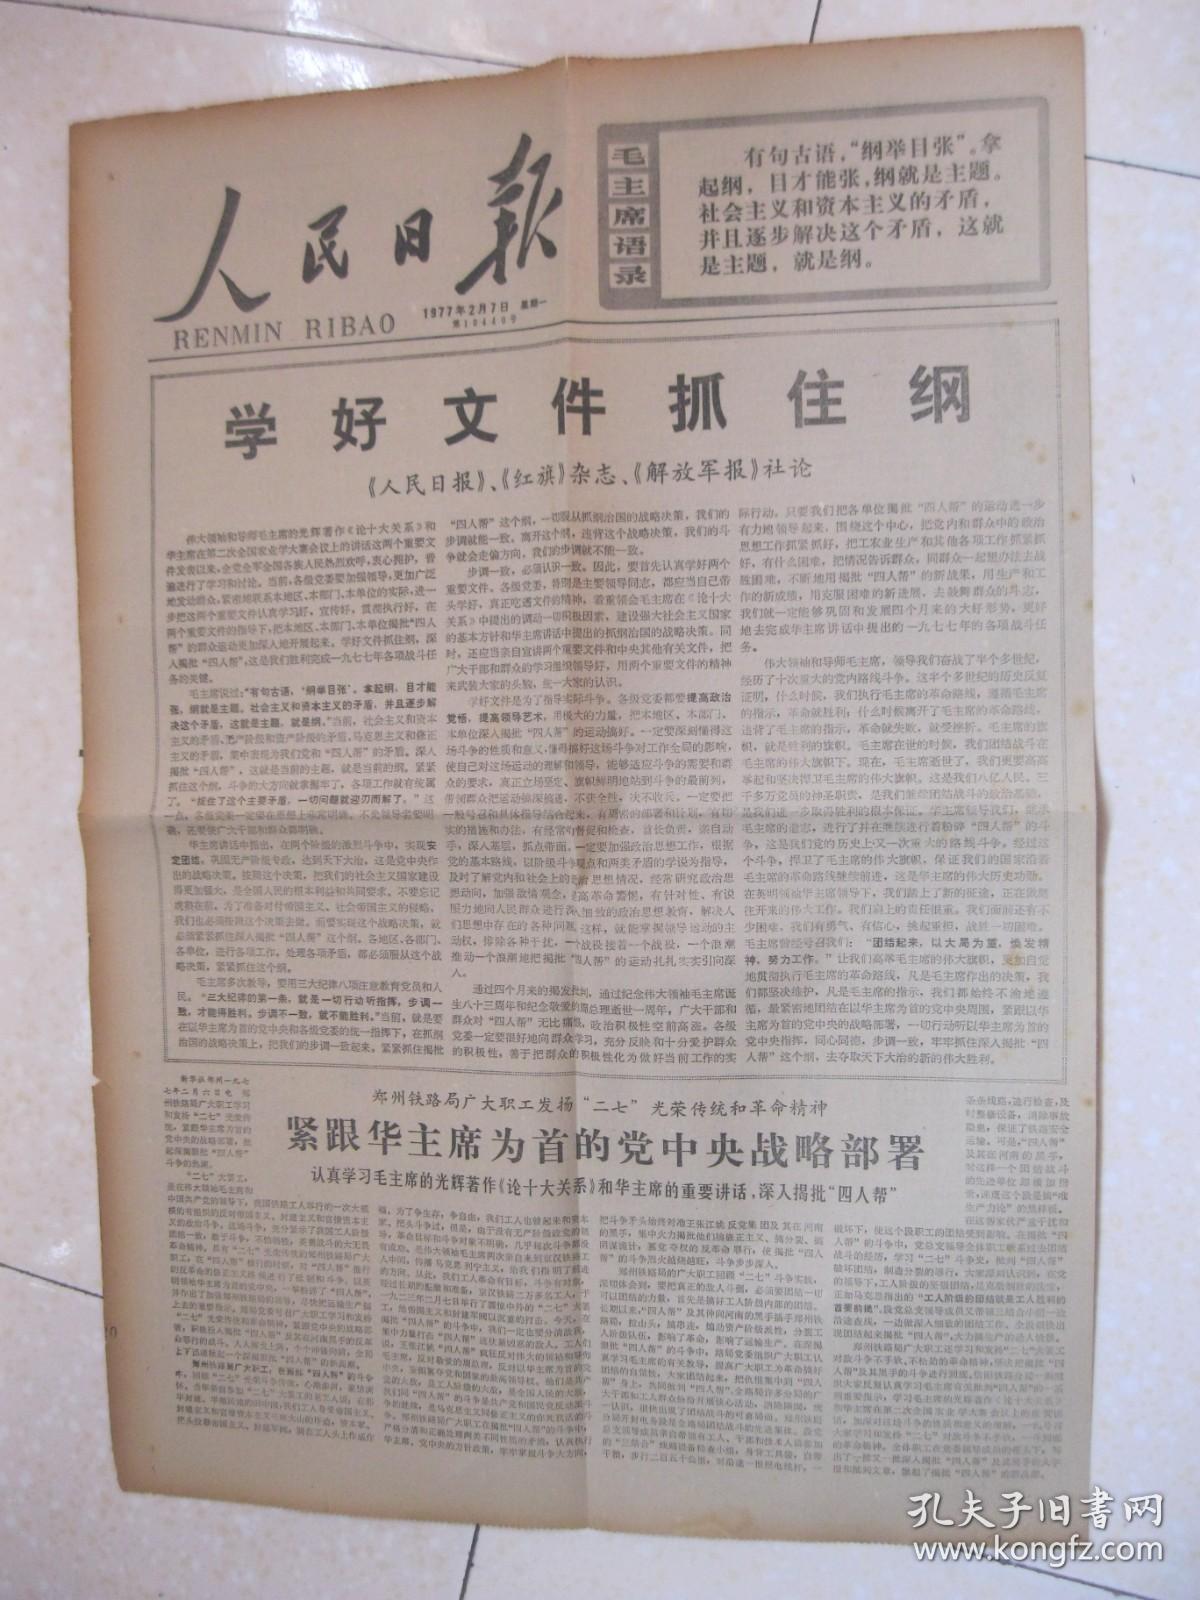 人民日报 1977年2月7日 第一～六版（《人民日报》《红旗》杂志、《解放军报》社论：学好文件抓住纲（提出了“两个凡是”的方针，即：“凡是毛主席作出的决策，我们都坚决维护，凡是毛主席的指示，我们都始终不渝地遵循。”）；上海市长宁区教师红专学院；华主席最爱护基层干部（陕西省吴堡县委）；图片报道：广东海南黎族苗族自治州崖县保港公社贯彻第二次全国农业学大寨会议精神；扁担精神赞（湖南省安化县长乐公社）2）